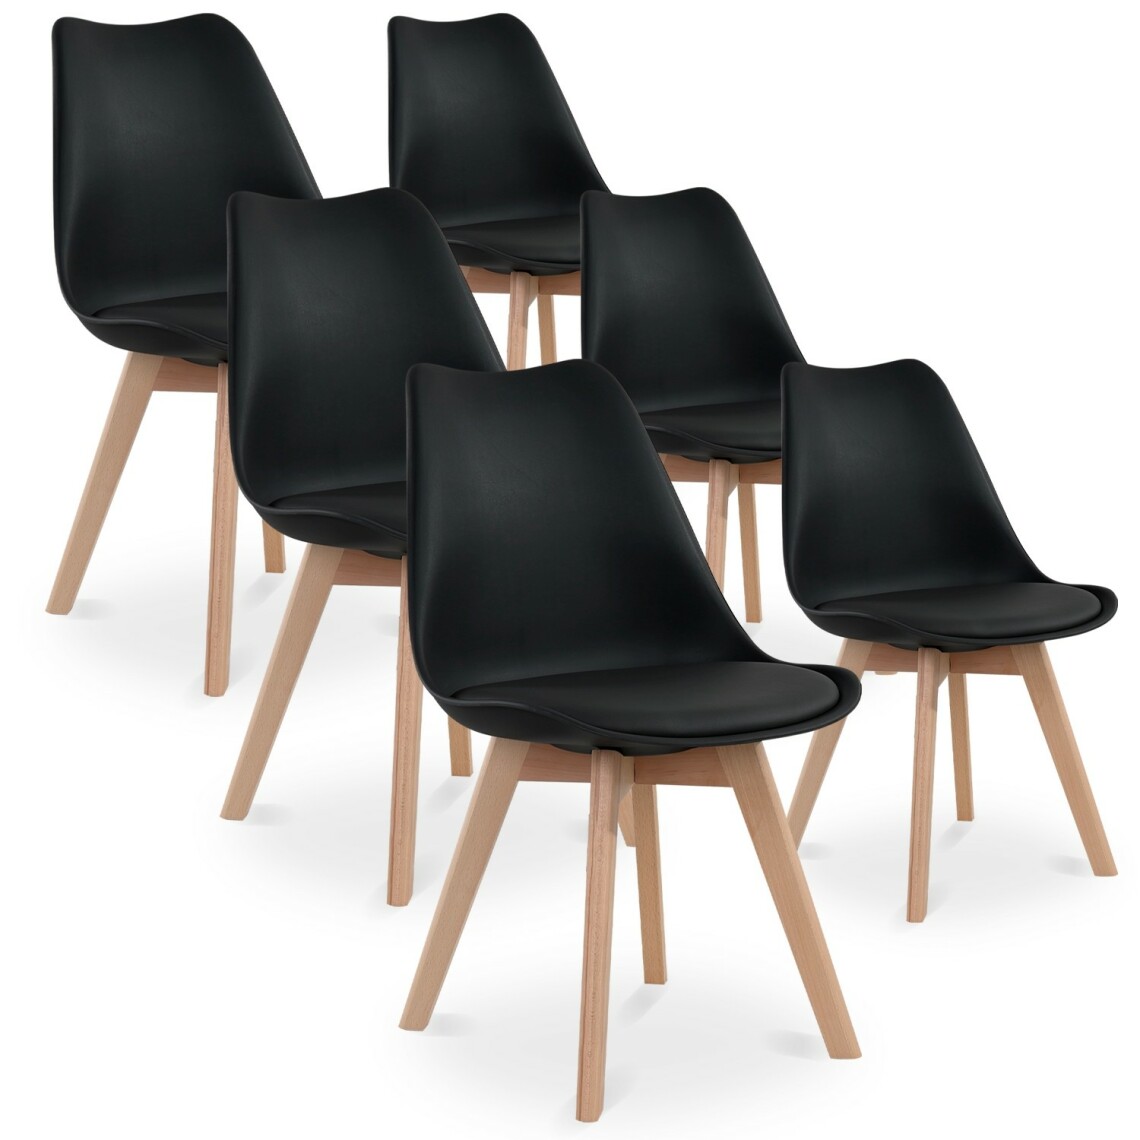 marque generique - Lot de 6 chaises style scandinave Catherina Noir - Chaises